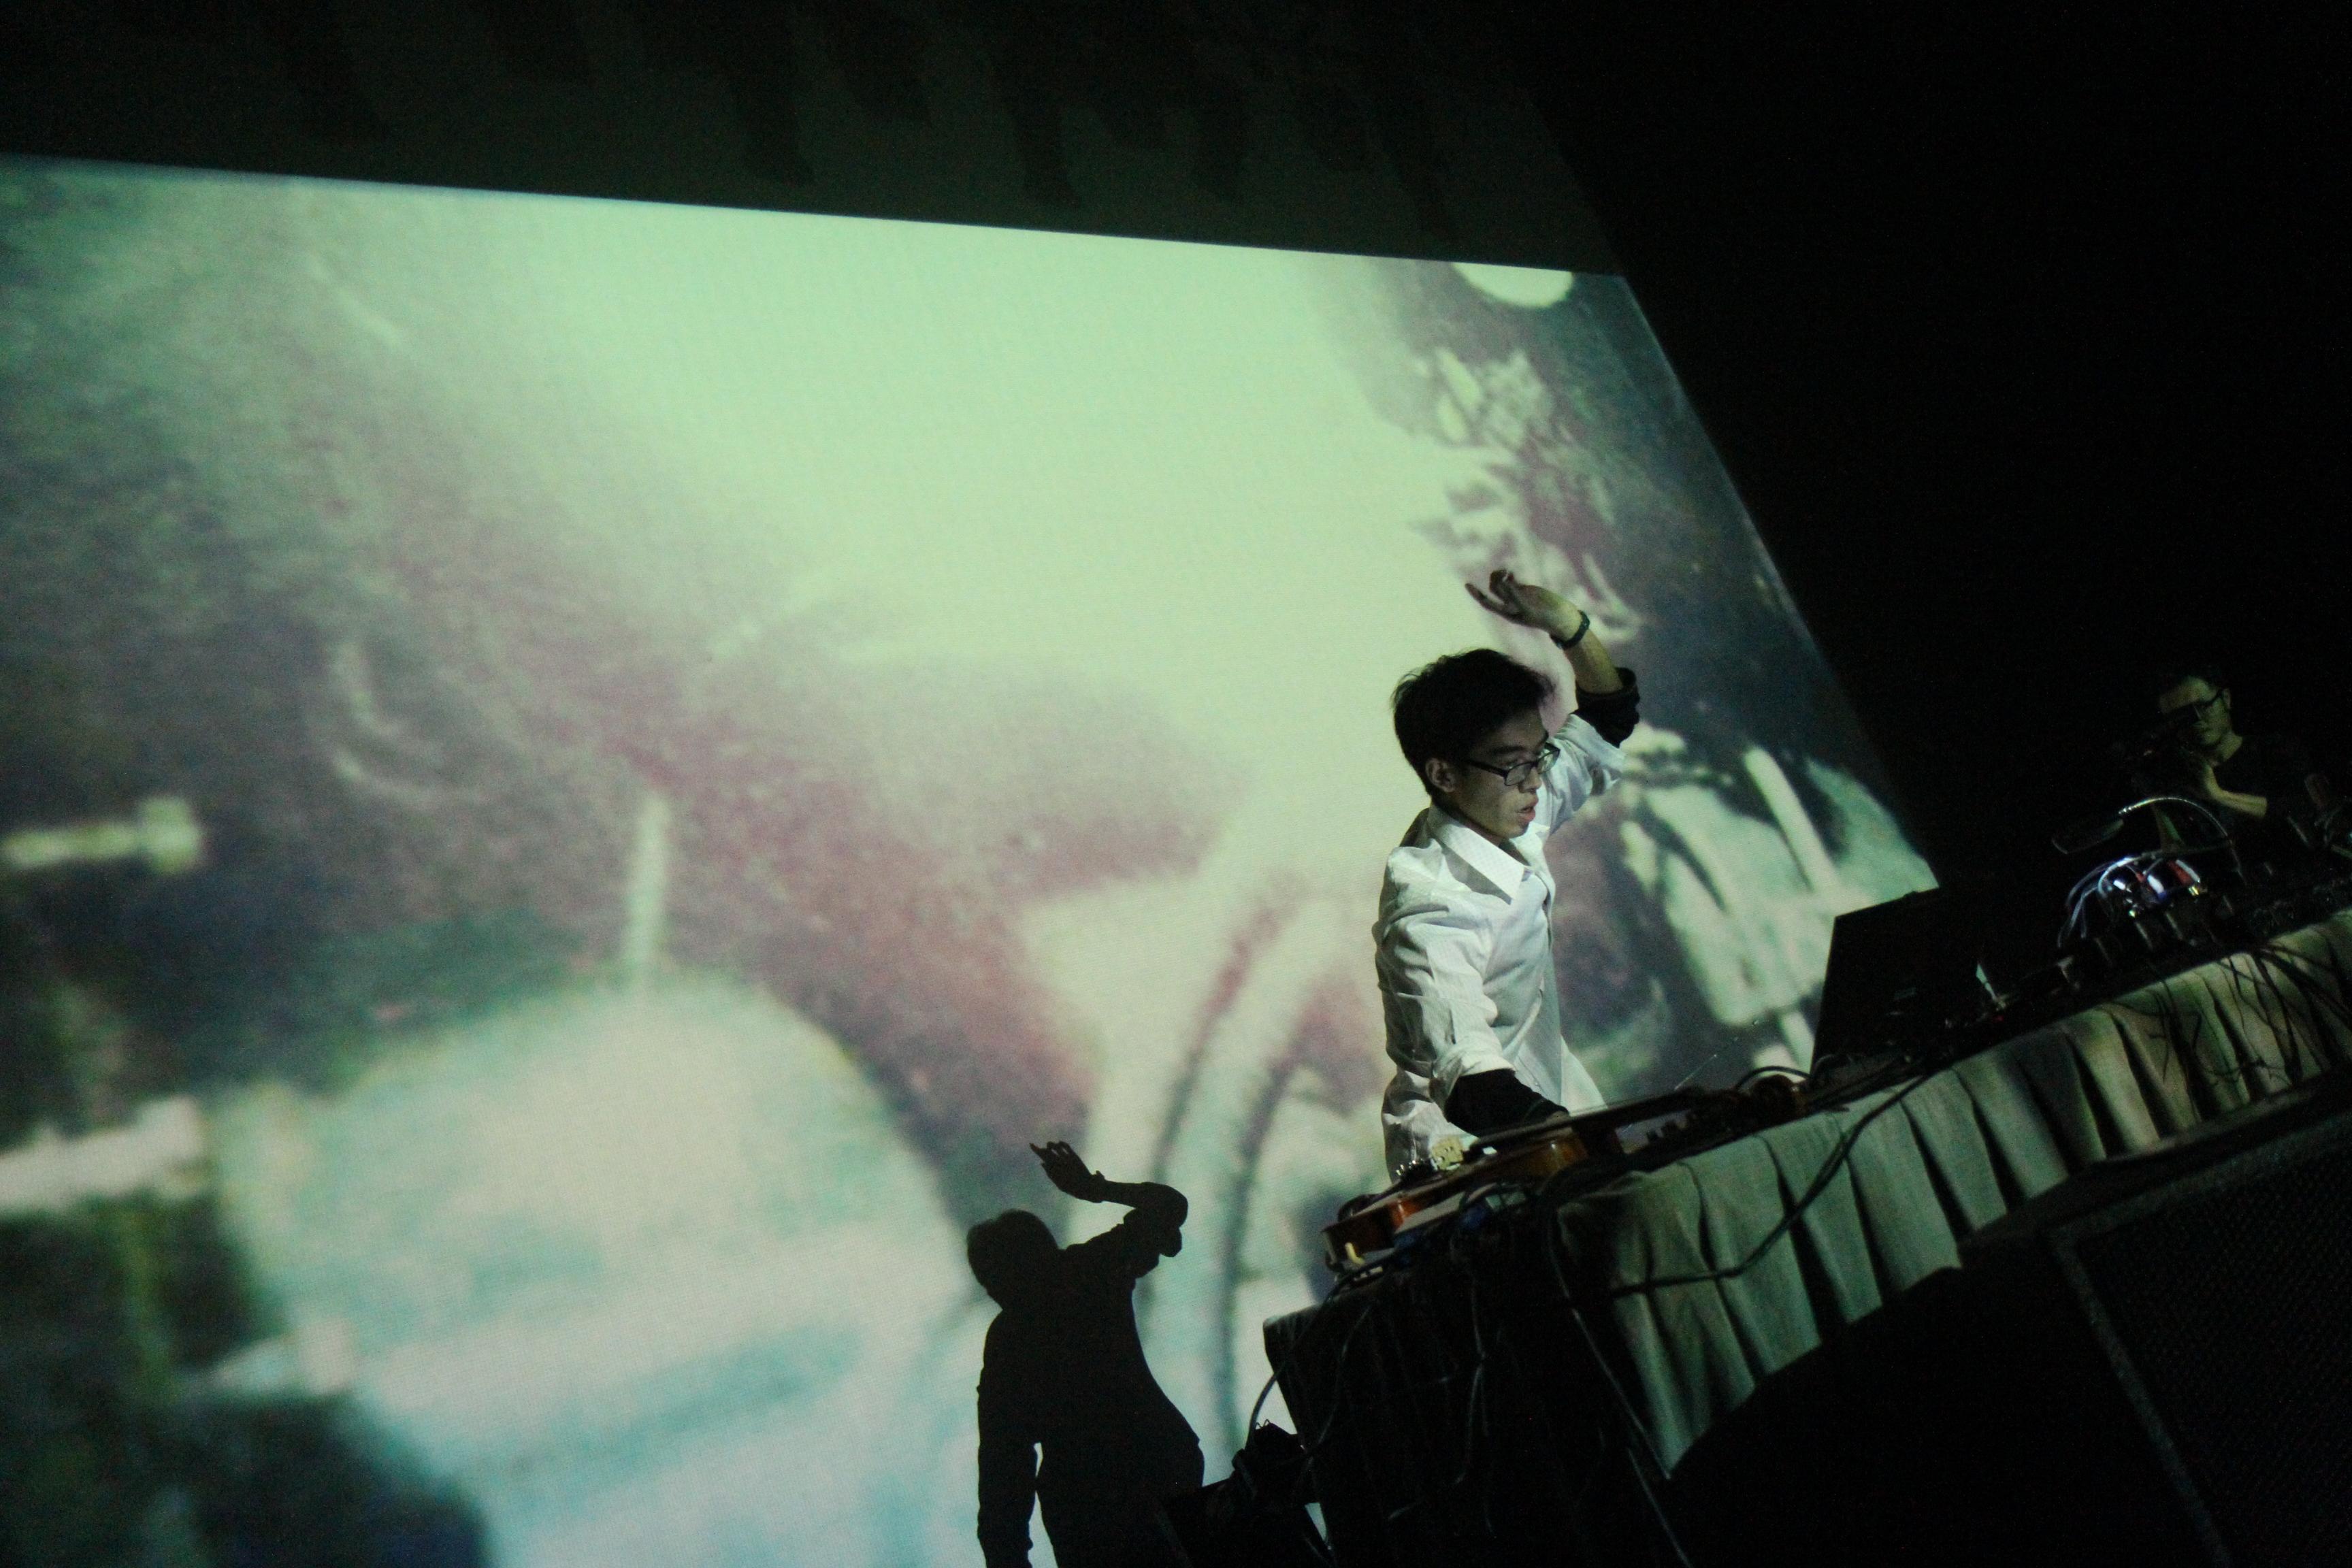 康樂及文化事務署主辦的「新視野藝術節」將於十一月帶來電子音樂家兼多媒體藝術家蔡世豪的跨媒體音樂會《地‧空‧演》。圖為蔡世豪，他將透過電子音樂及影像與觀眾探索宇宙。（圖片來源：Kenny Lam）


